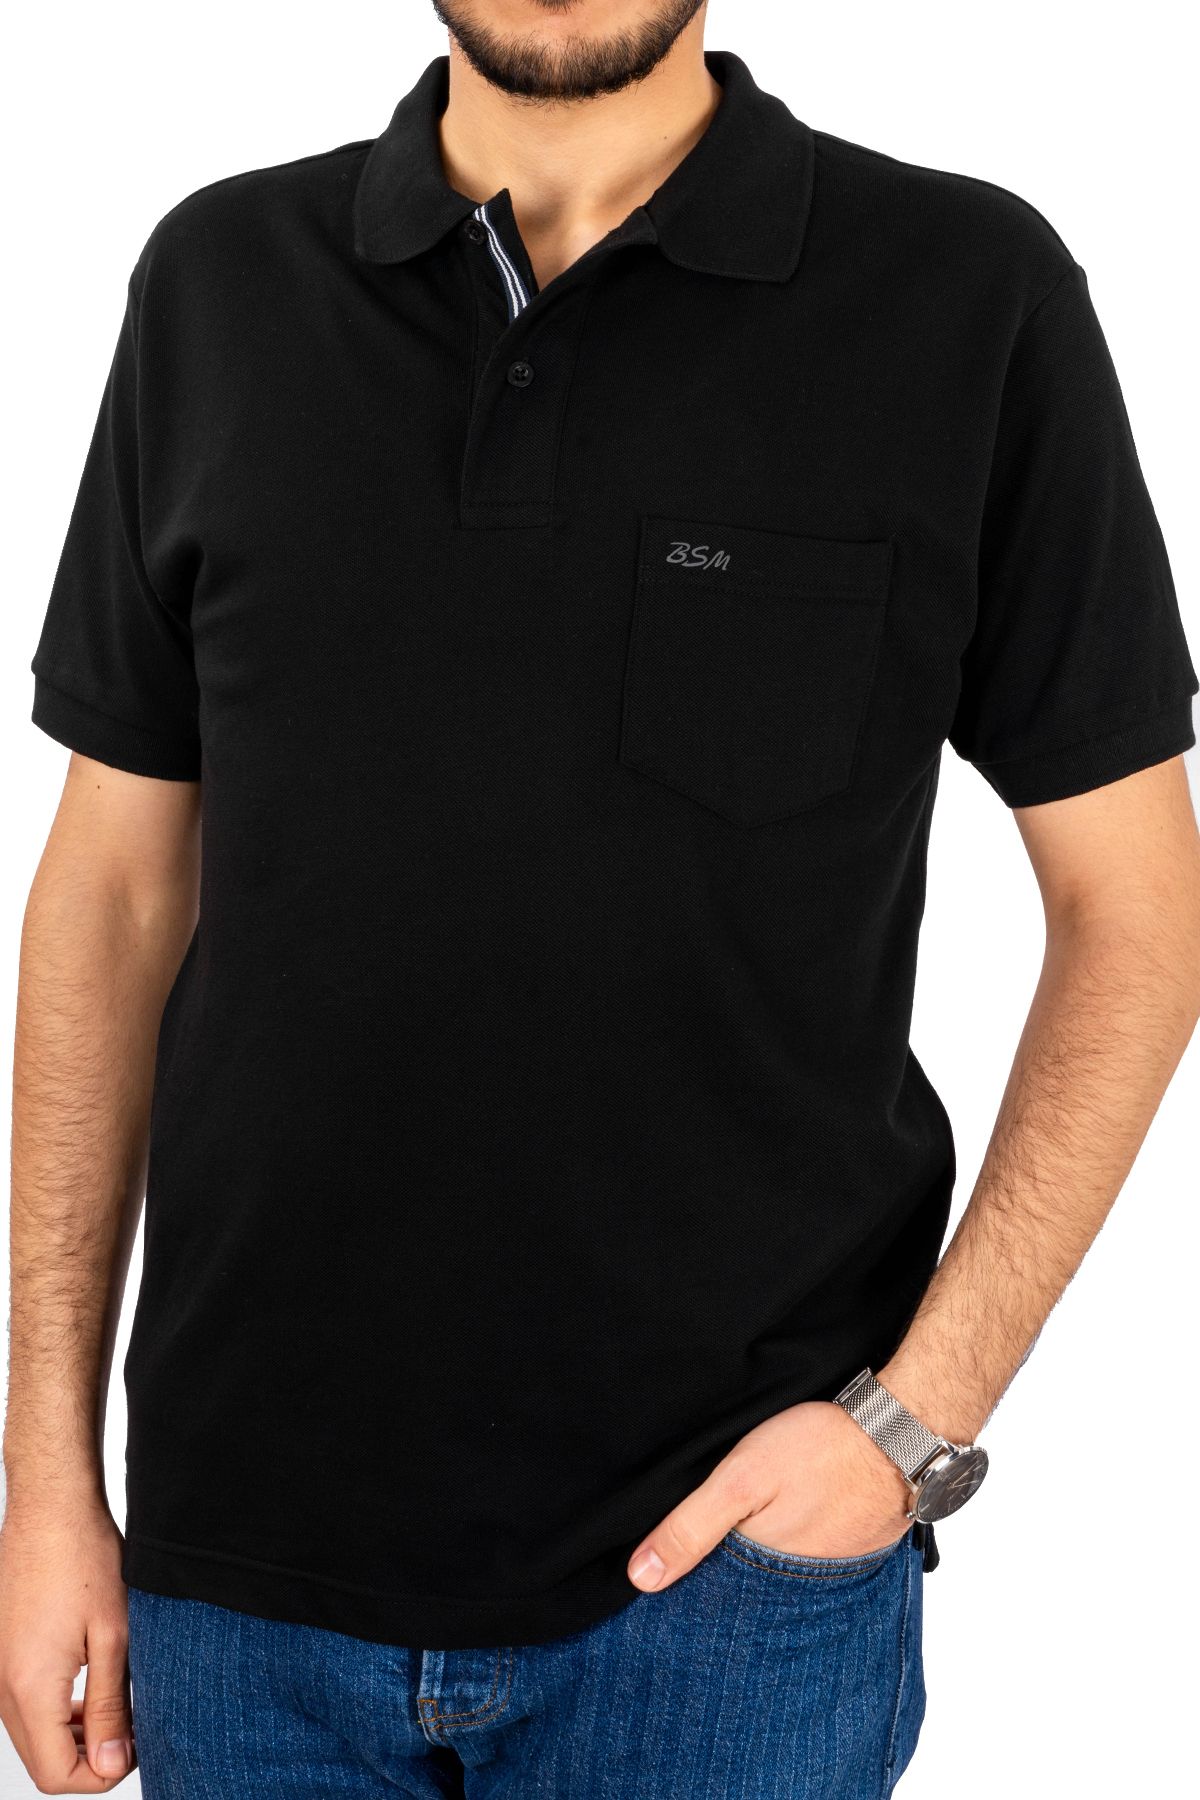 BSM Erkek Yüksek Kalite Cepli Kısa Kollu Polo Yaka Siyah Pike T-Shirt